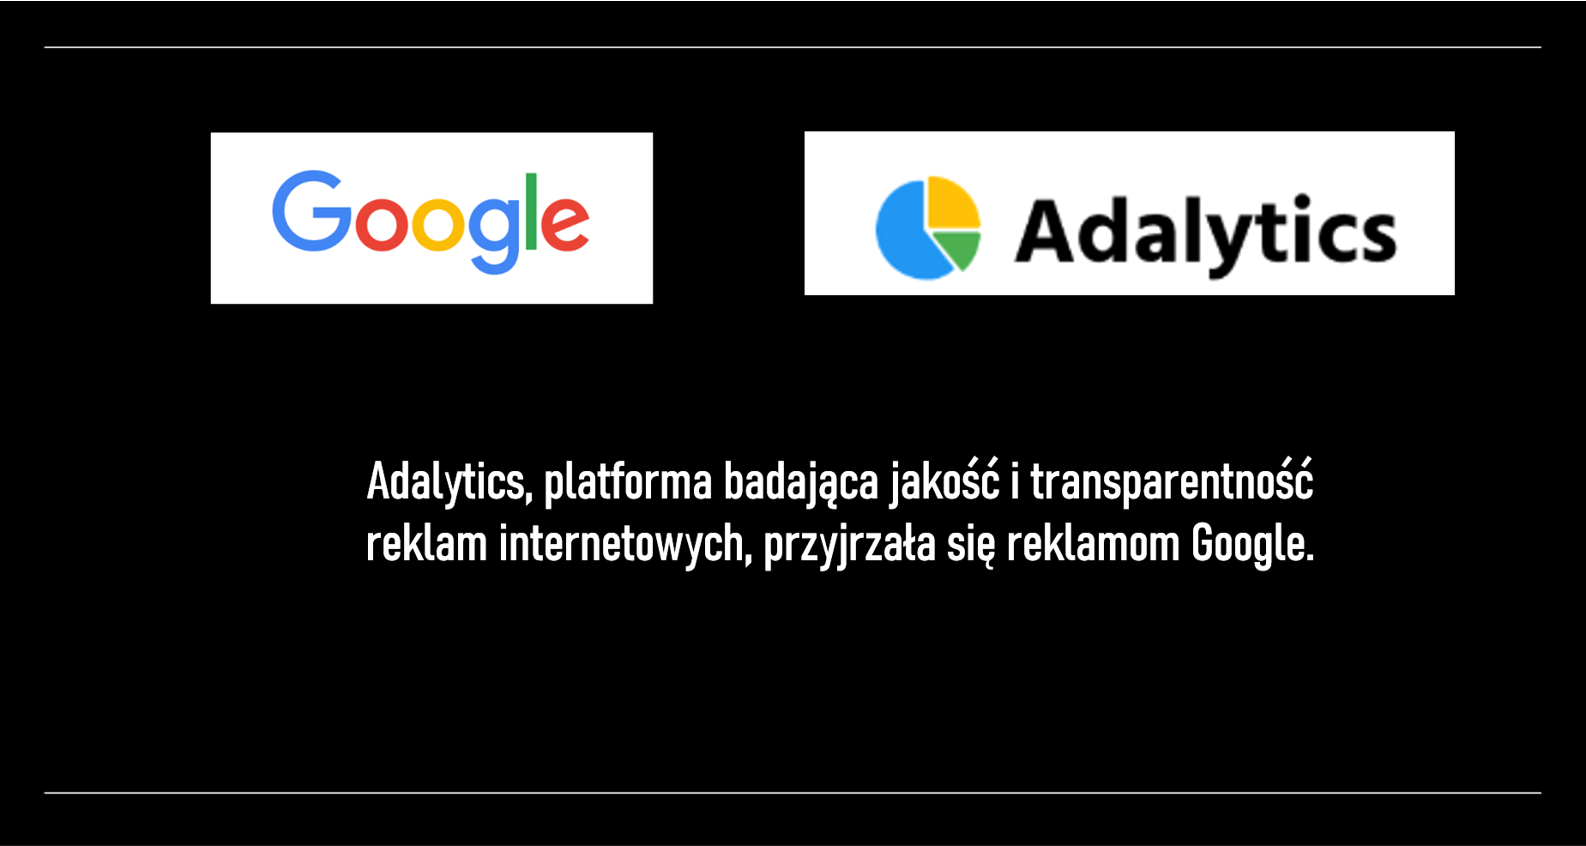 Adalytics, platforma badająca jakość i transparentność reklam internetowych, przyjrzała się reklamom Google. Poniżej podsumowanie ich raportów na ten temat.